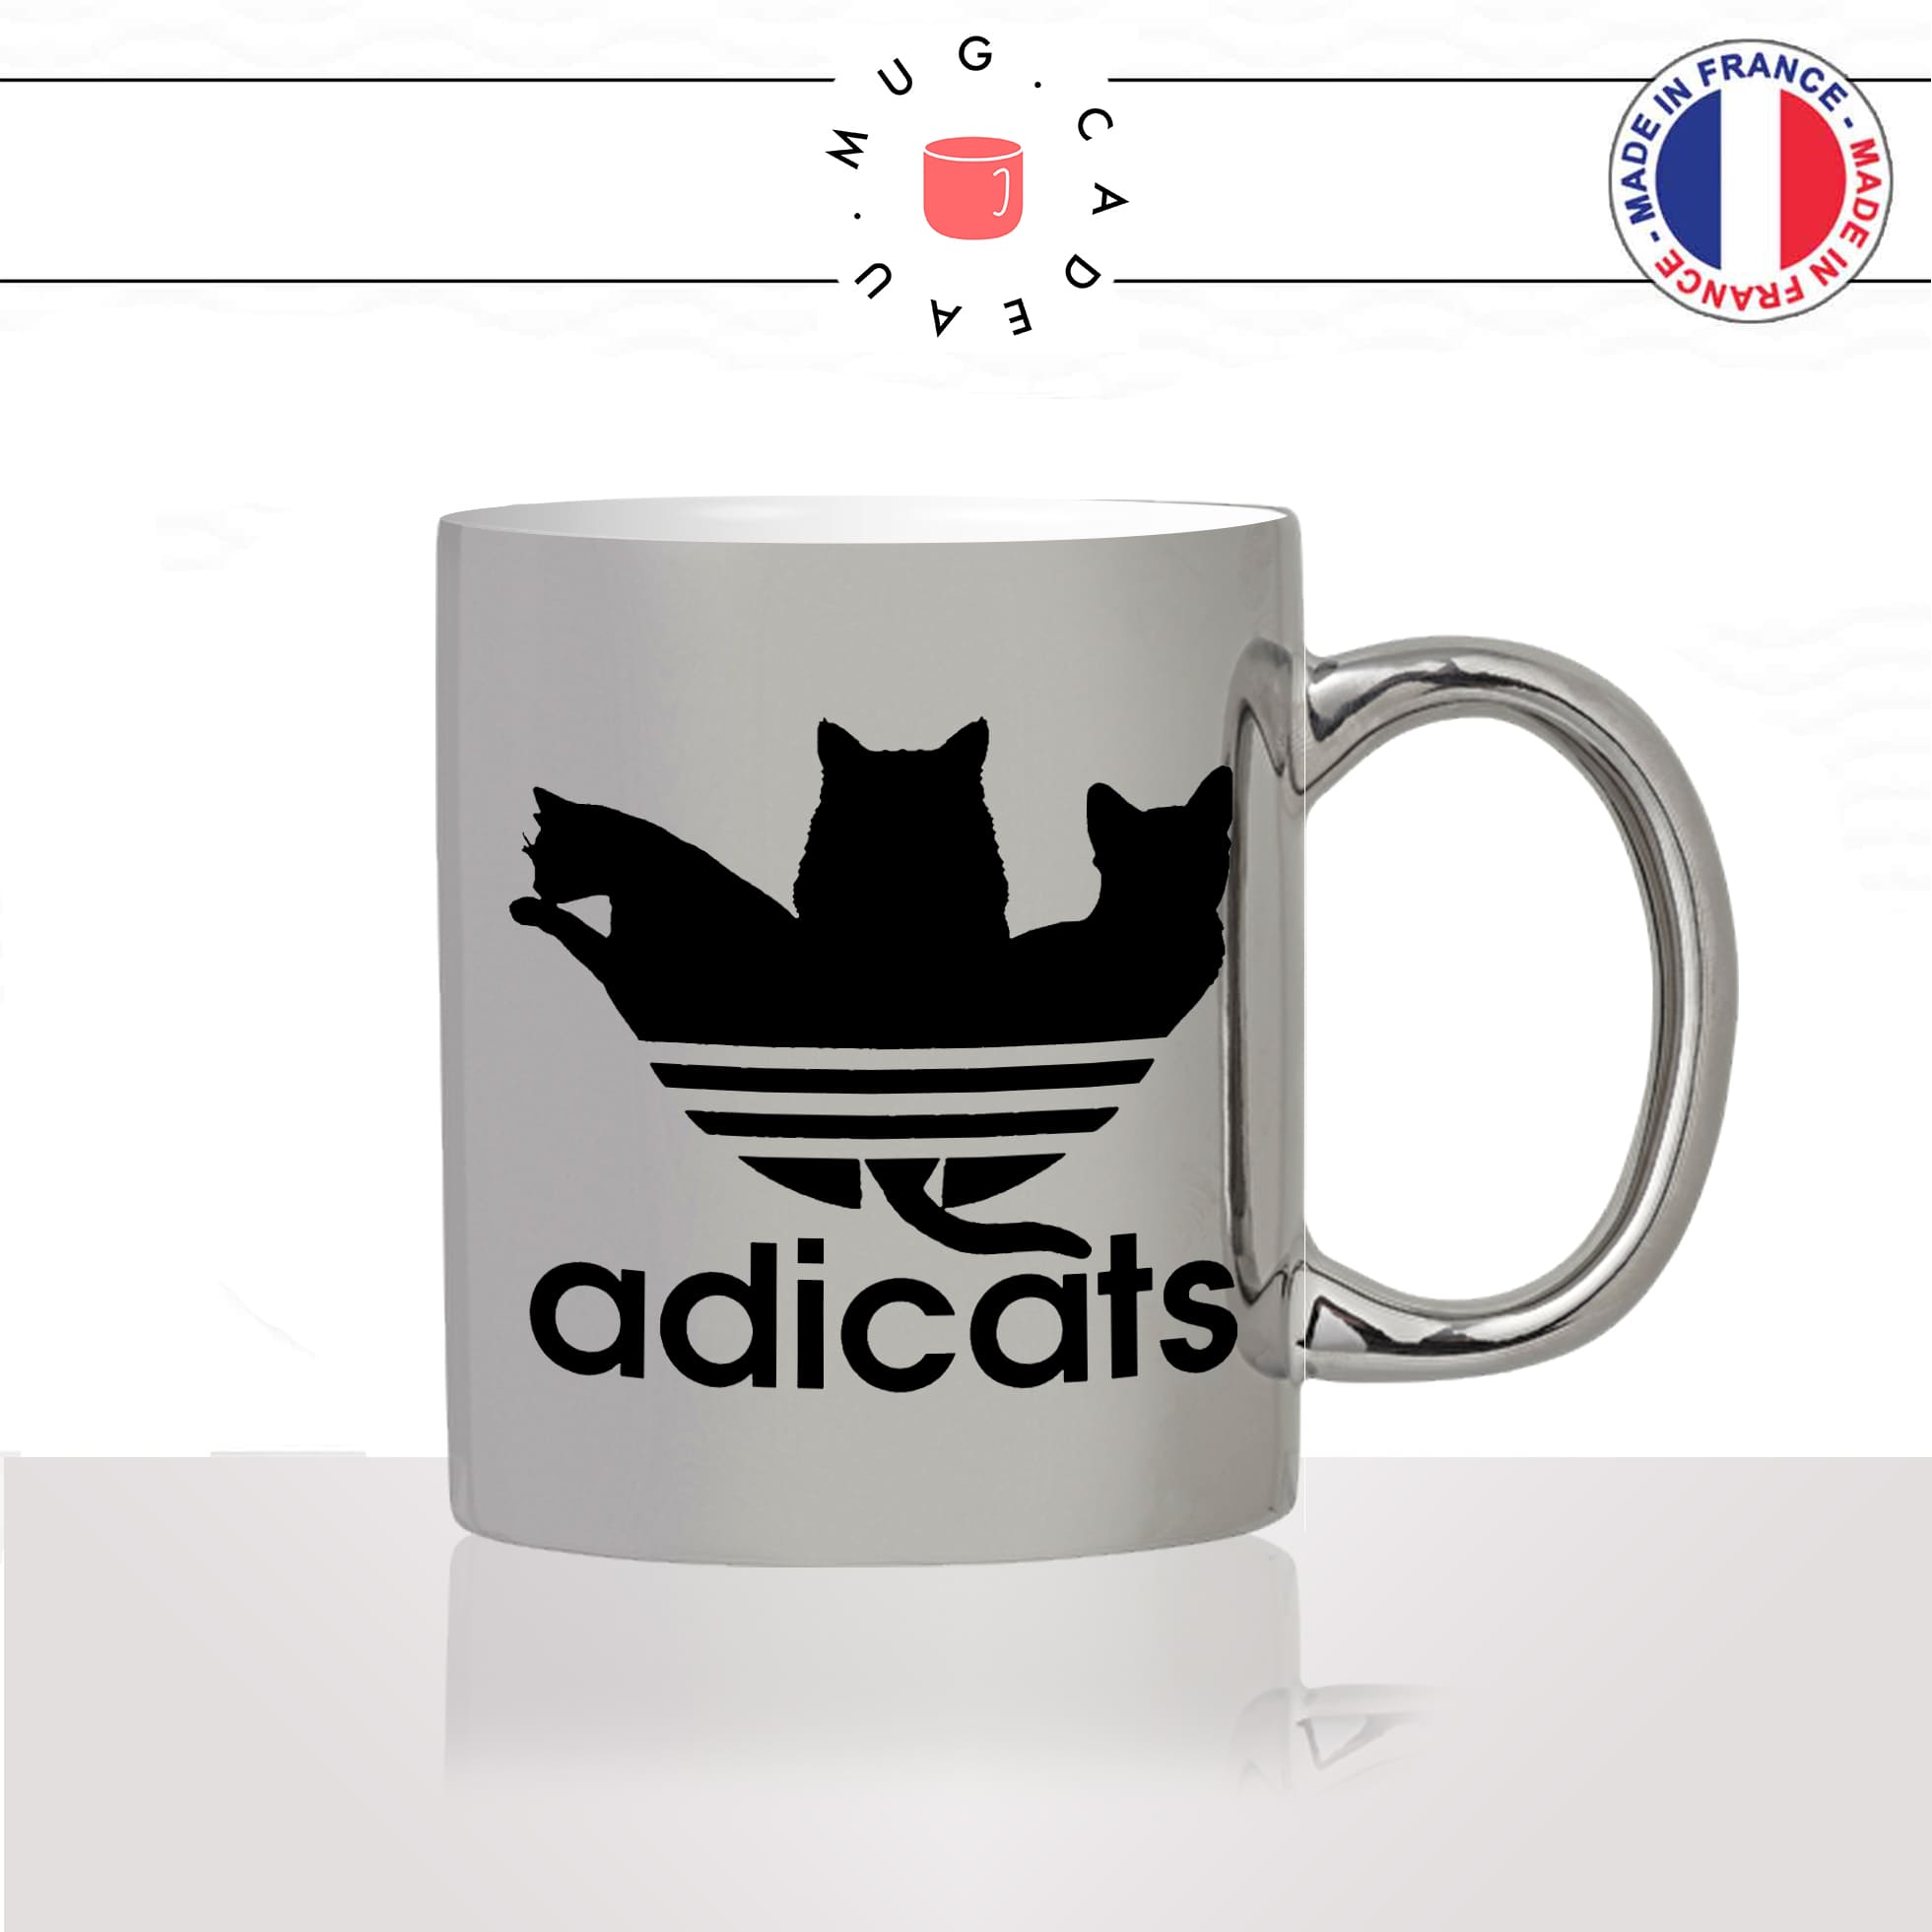 mug-tasse-argenté-argent-gris-silver-adicats-chat-chaton-mignon-marque-parodie-homme-femme-humour-fun-cool-idée-cadeau-original2